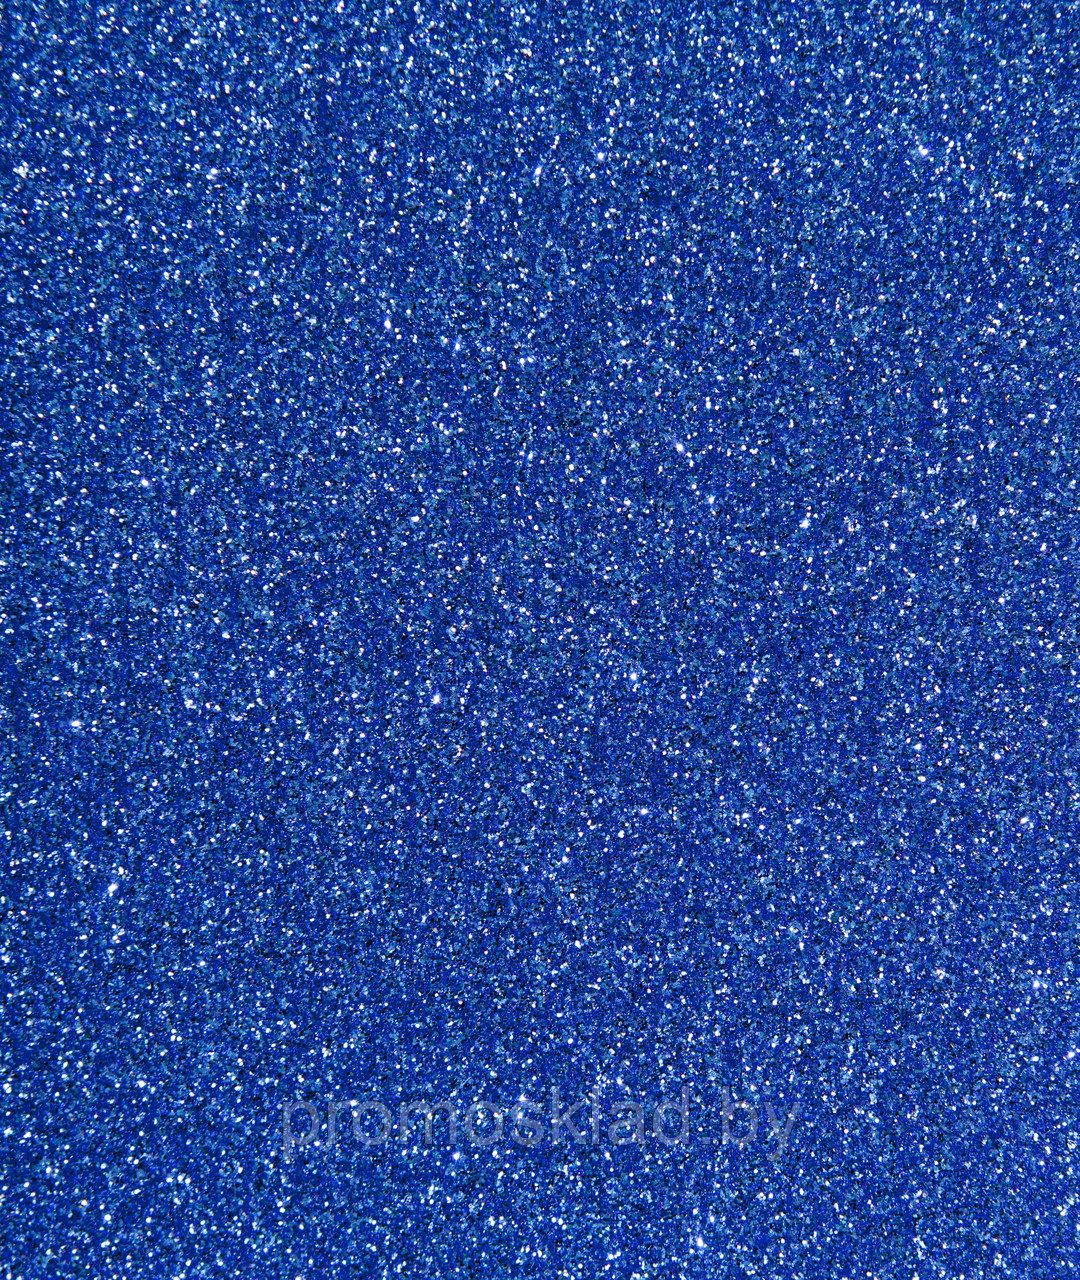 Термотрансферная пленка Glitter Blue 11 голубой (полиуретановая основа), SEF Франция, фото 1